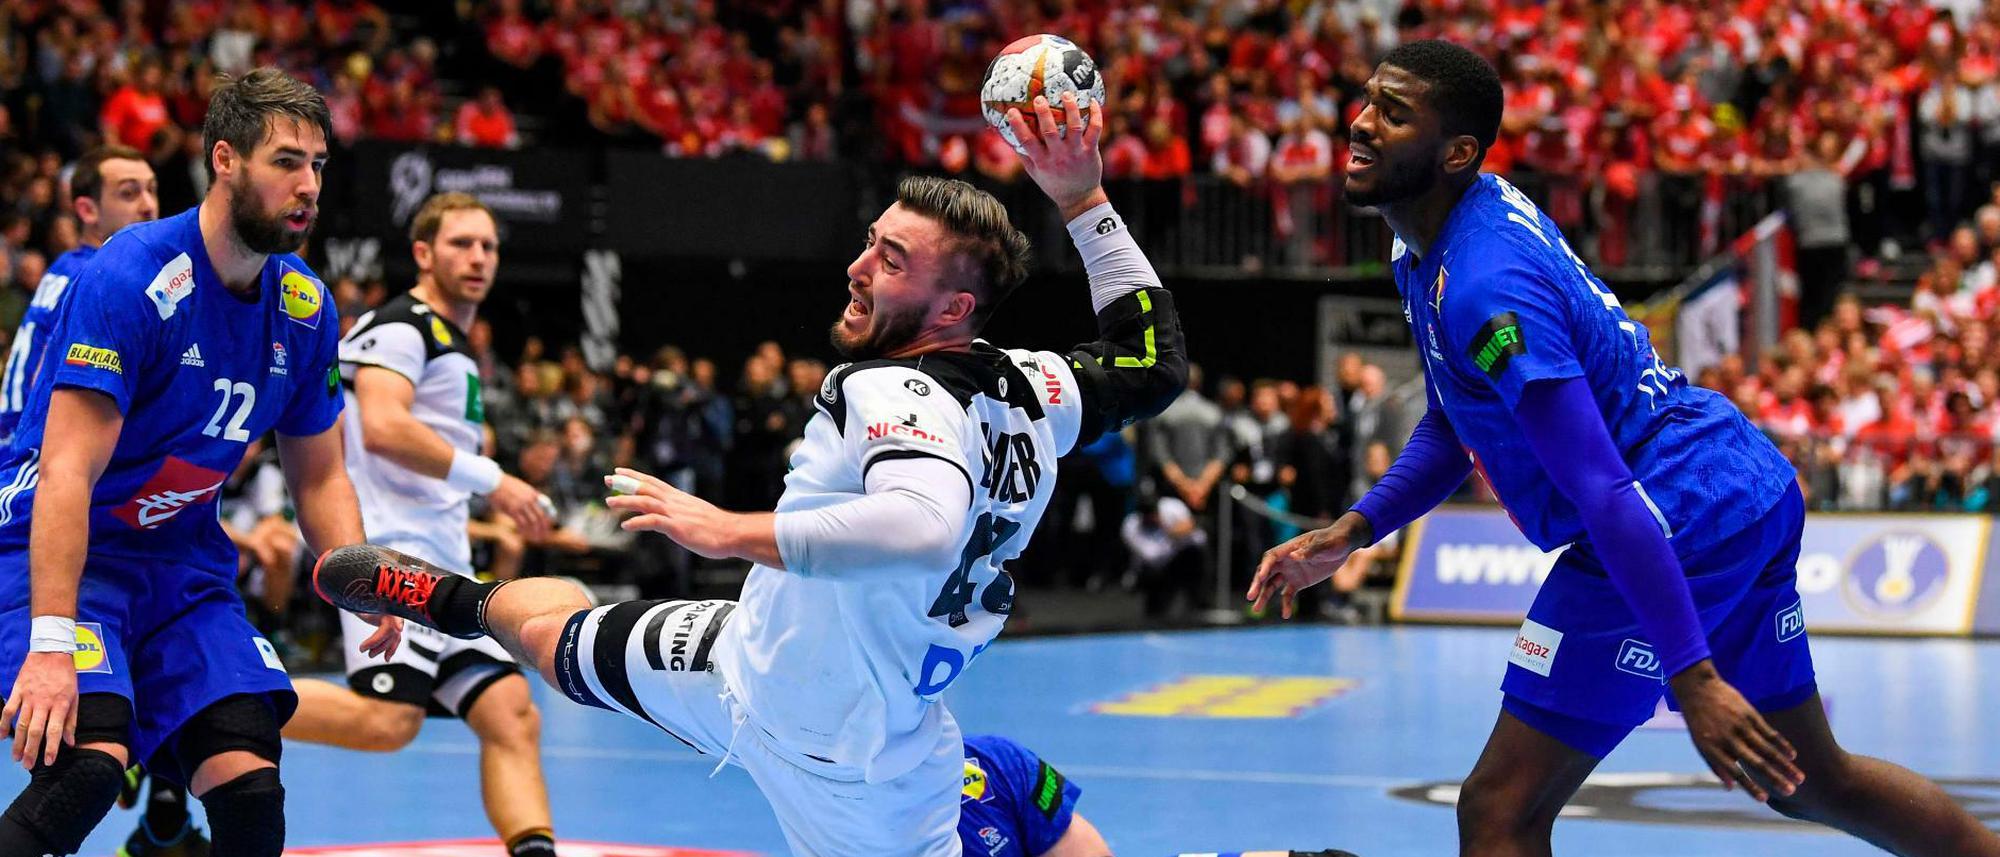 Eine WM macht noch keine Schule Warum Handball es bei der Jugend schwer hat